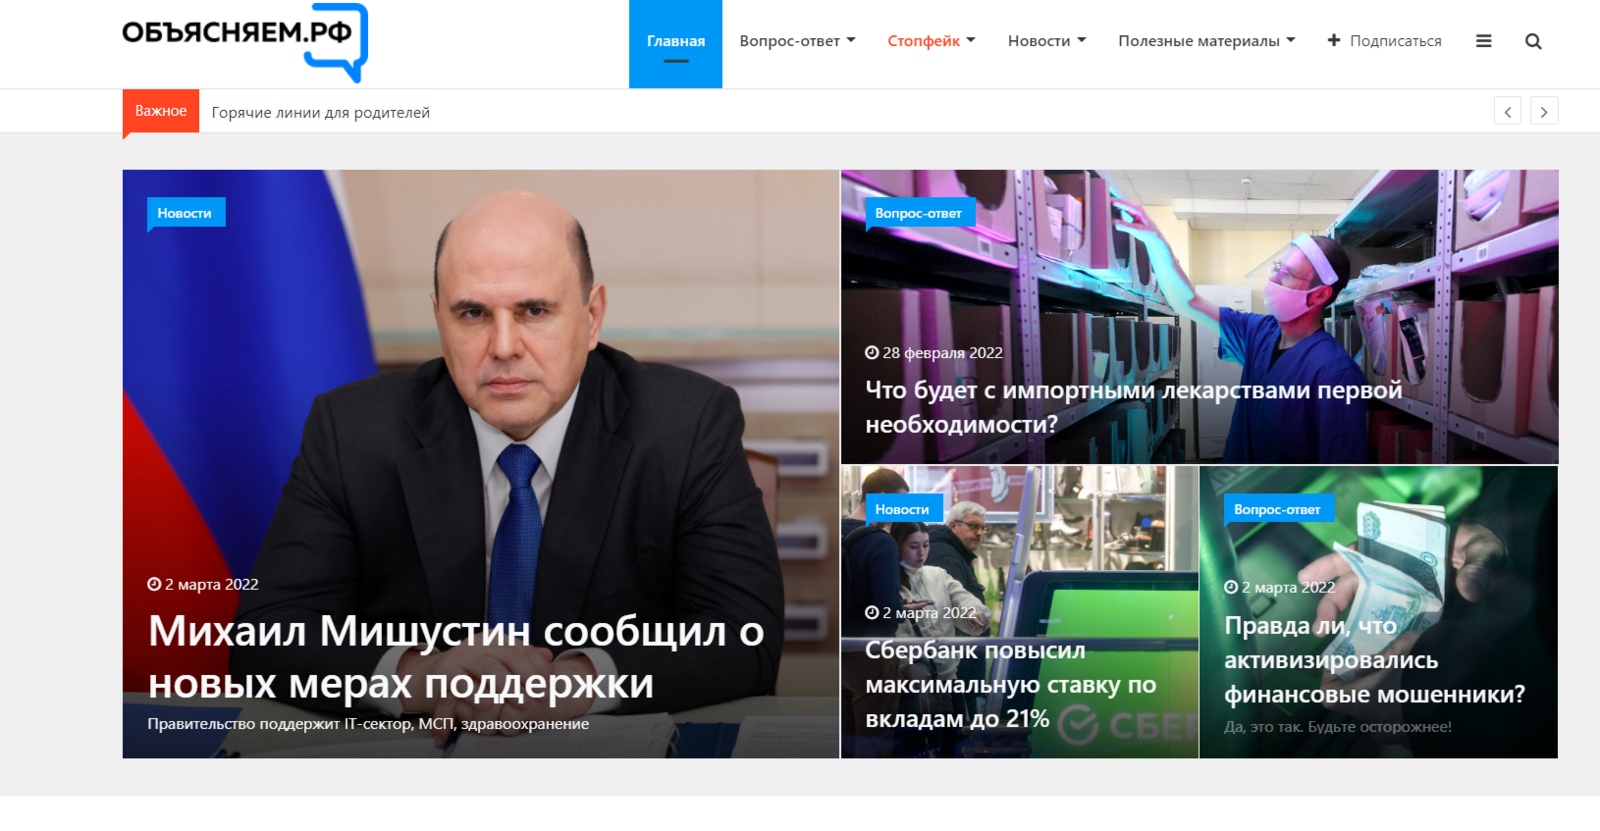 В Башкортостане заработали электронные ресурсы и паблики для информирования жителей по волнующим и актуальным вопросам